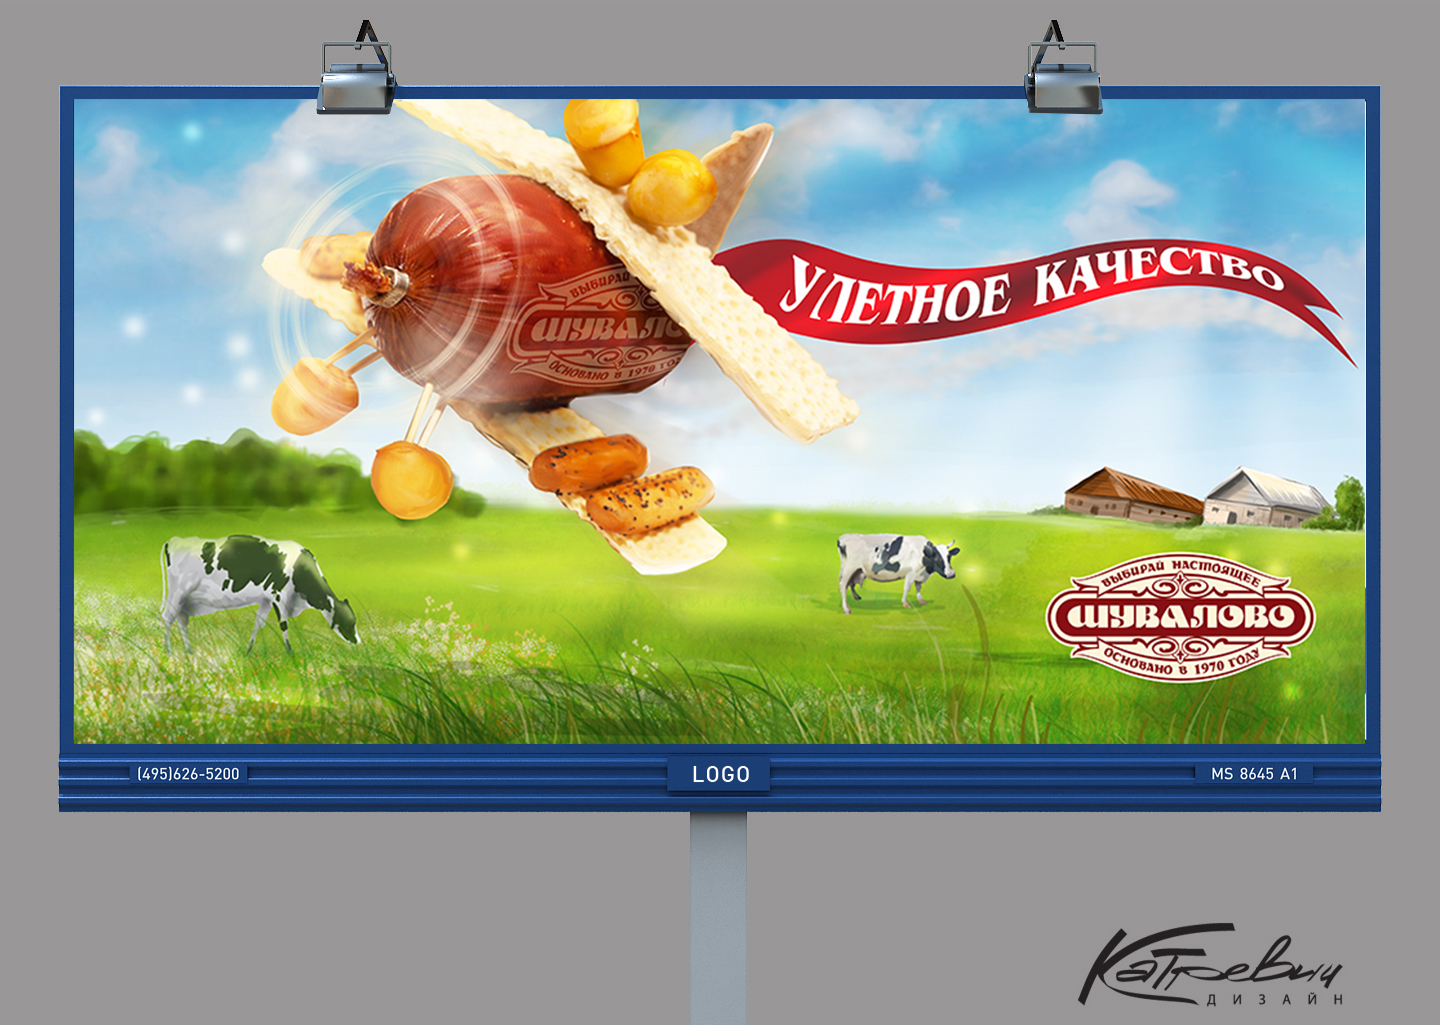 Реклама нового продукта. Креативная реклама колбасы. Креативная реклама магазина продуктов. Рекламный плакат колбаса. Дизайн рекламы продуктов.